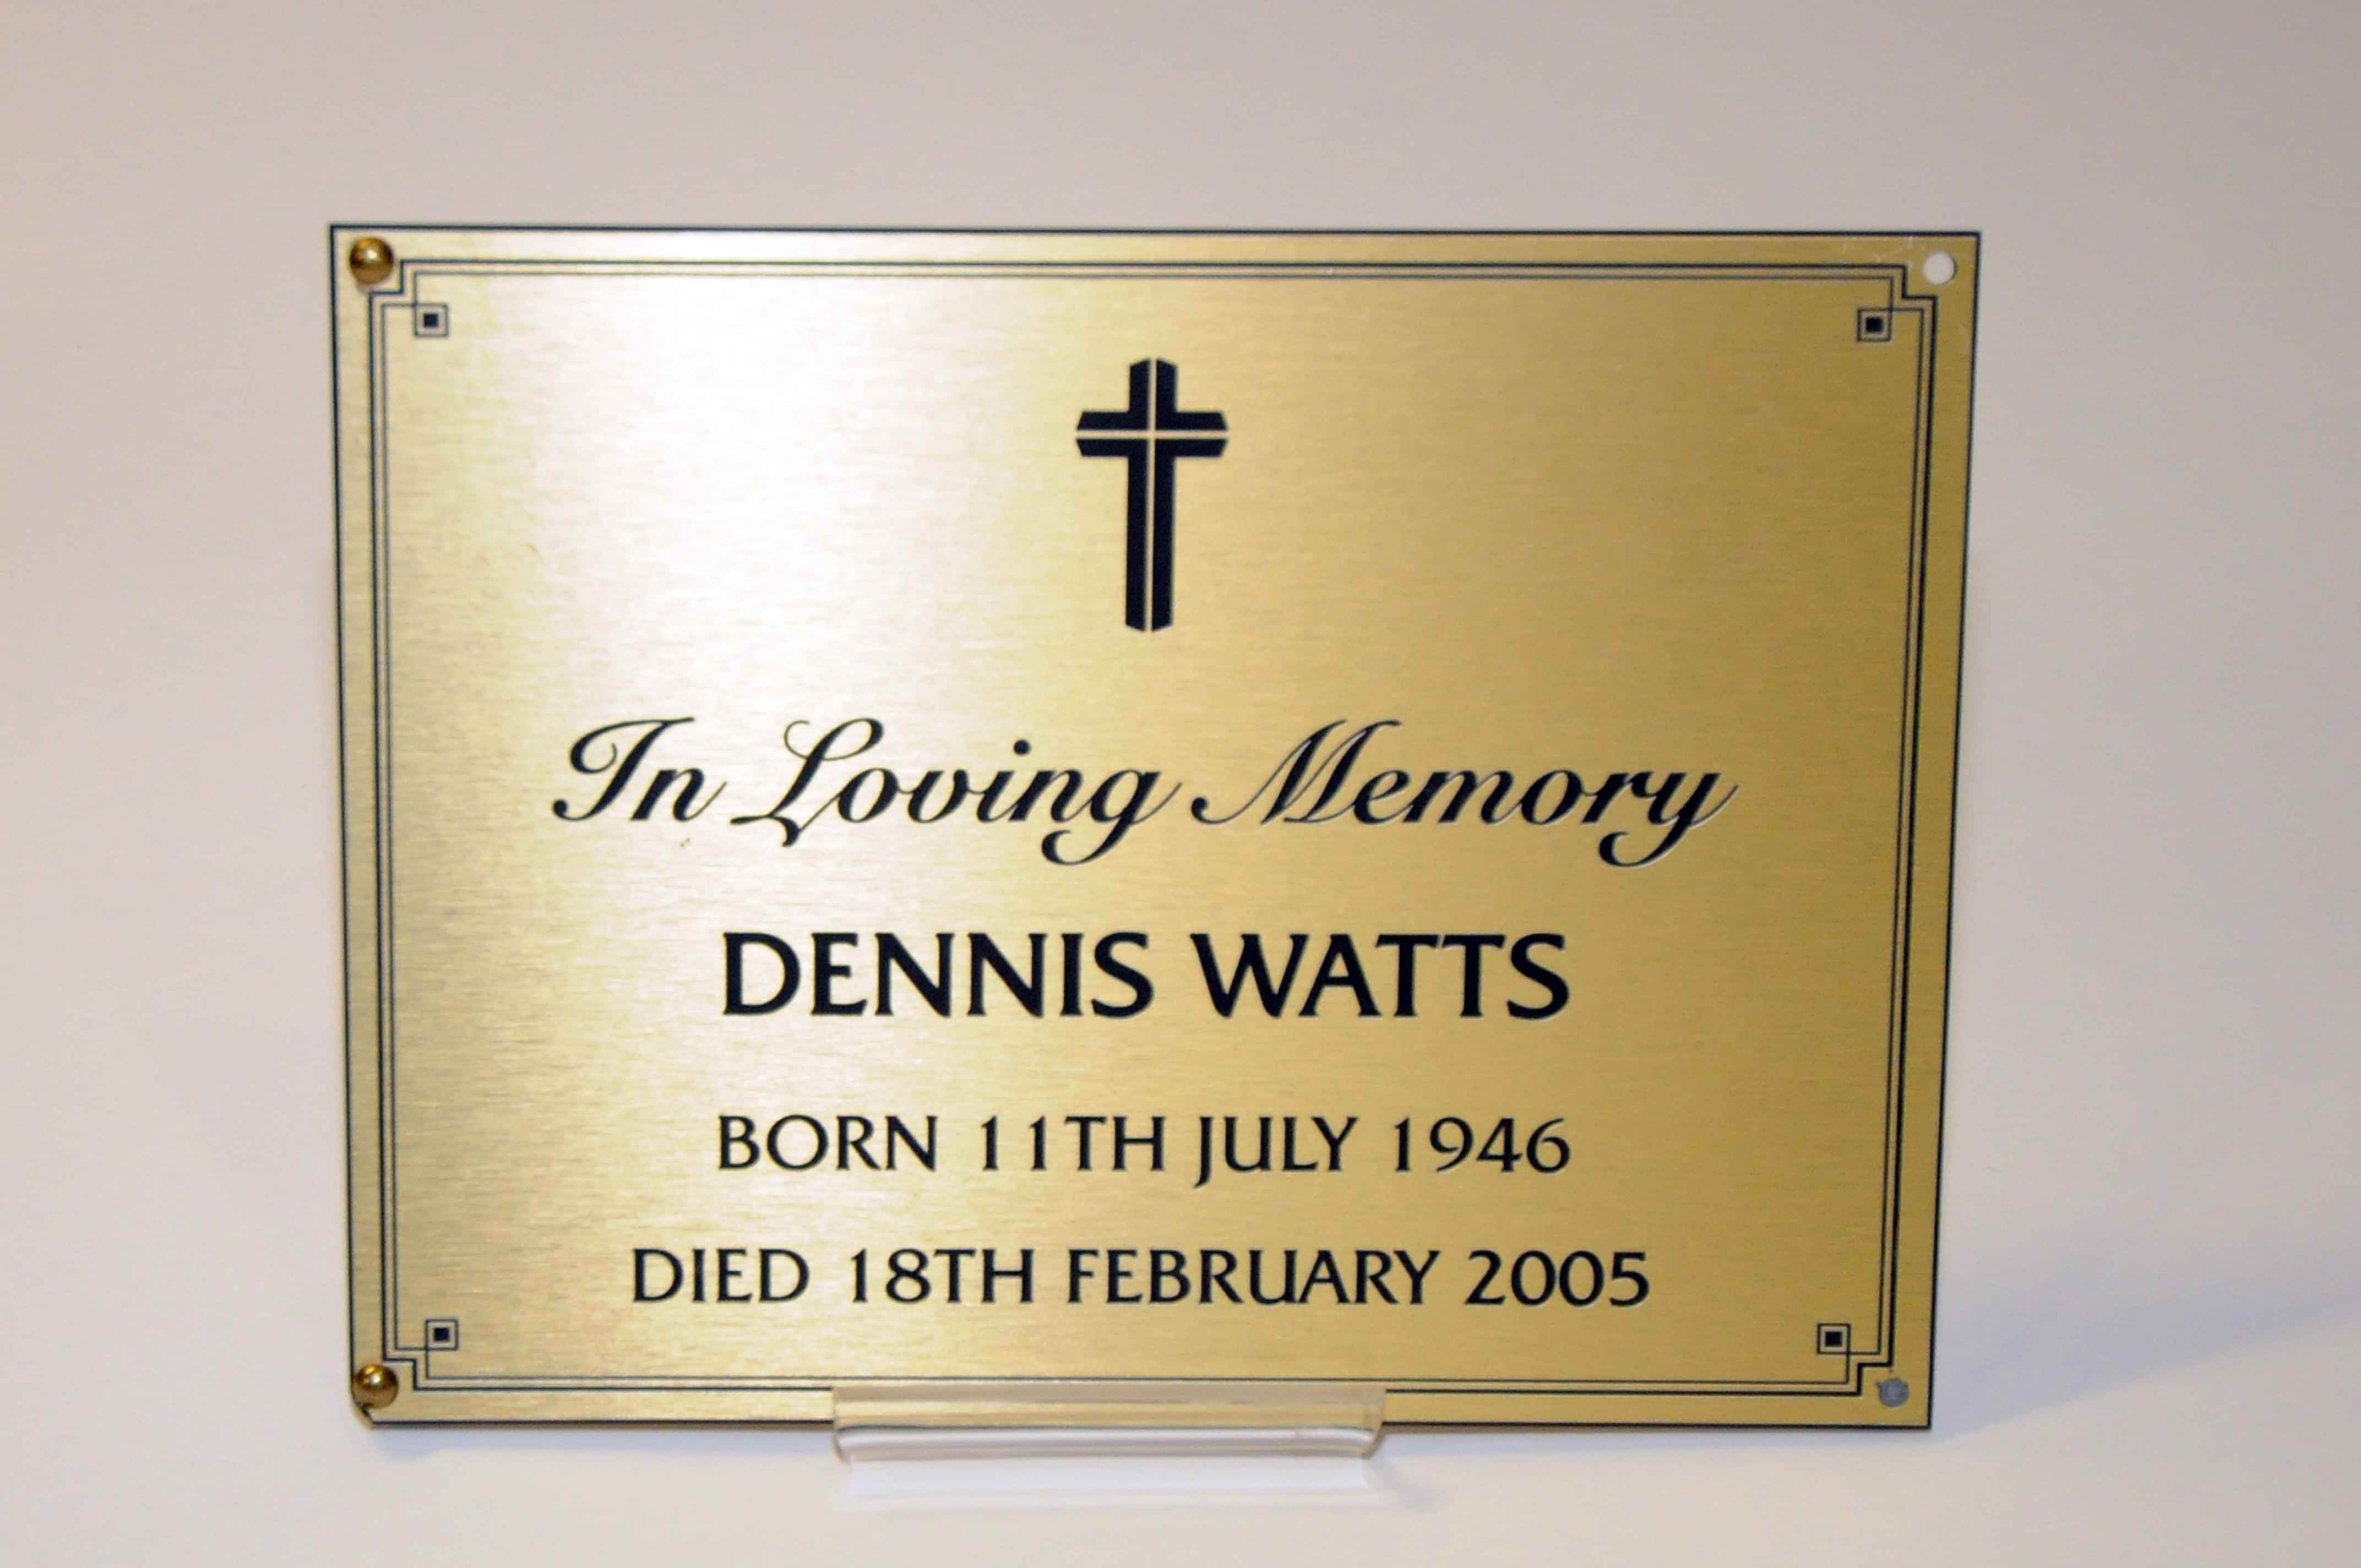 Den Watts Plaque